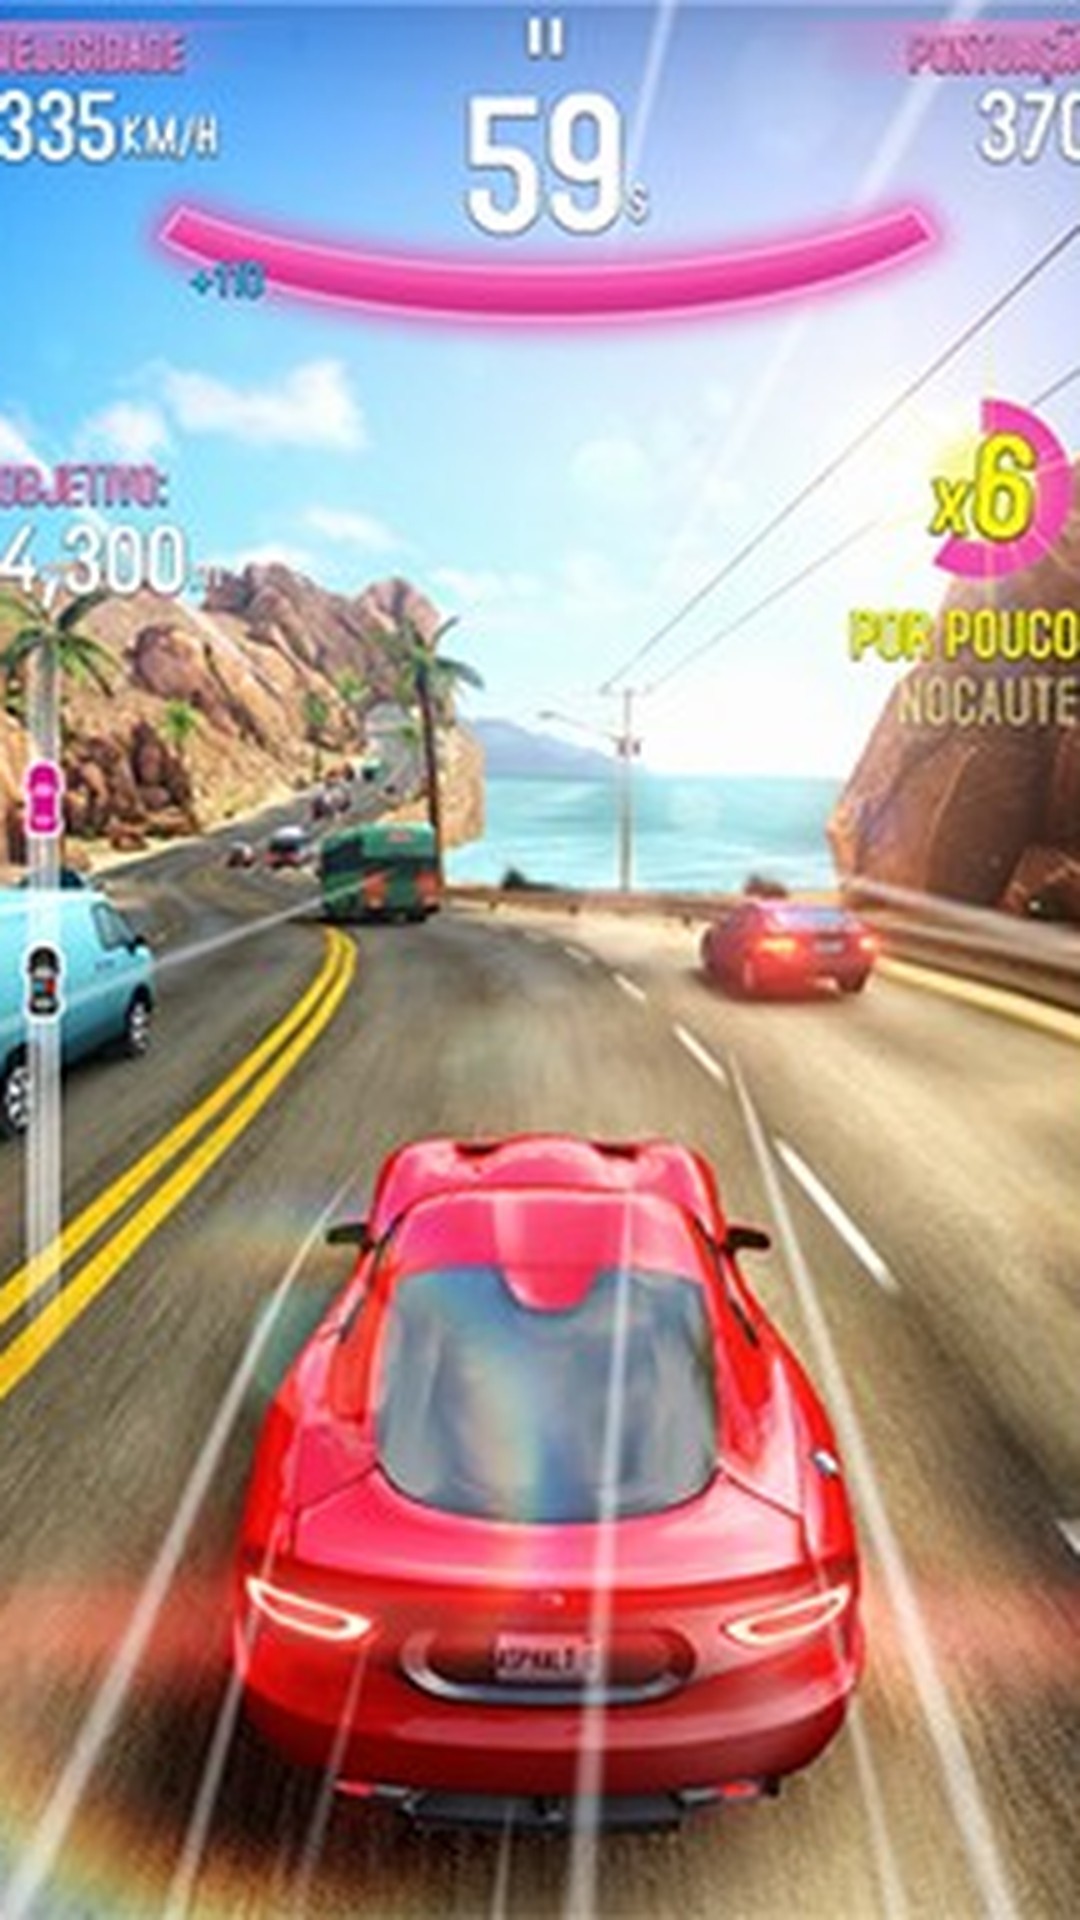 Jogo de Carro Pako Highway - Jogos Android